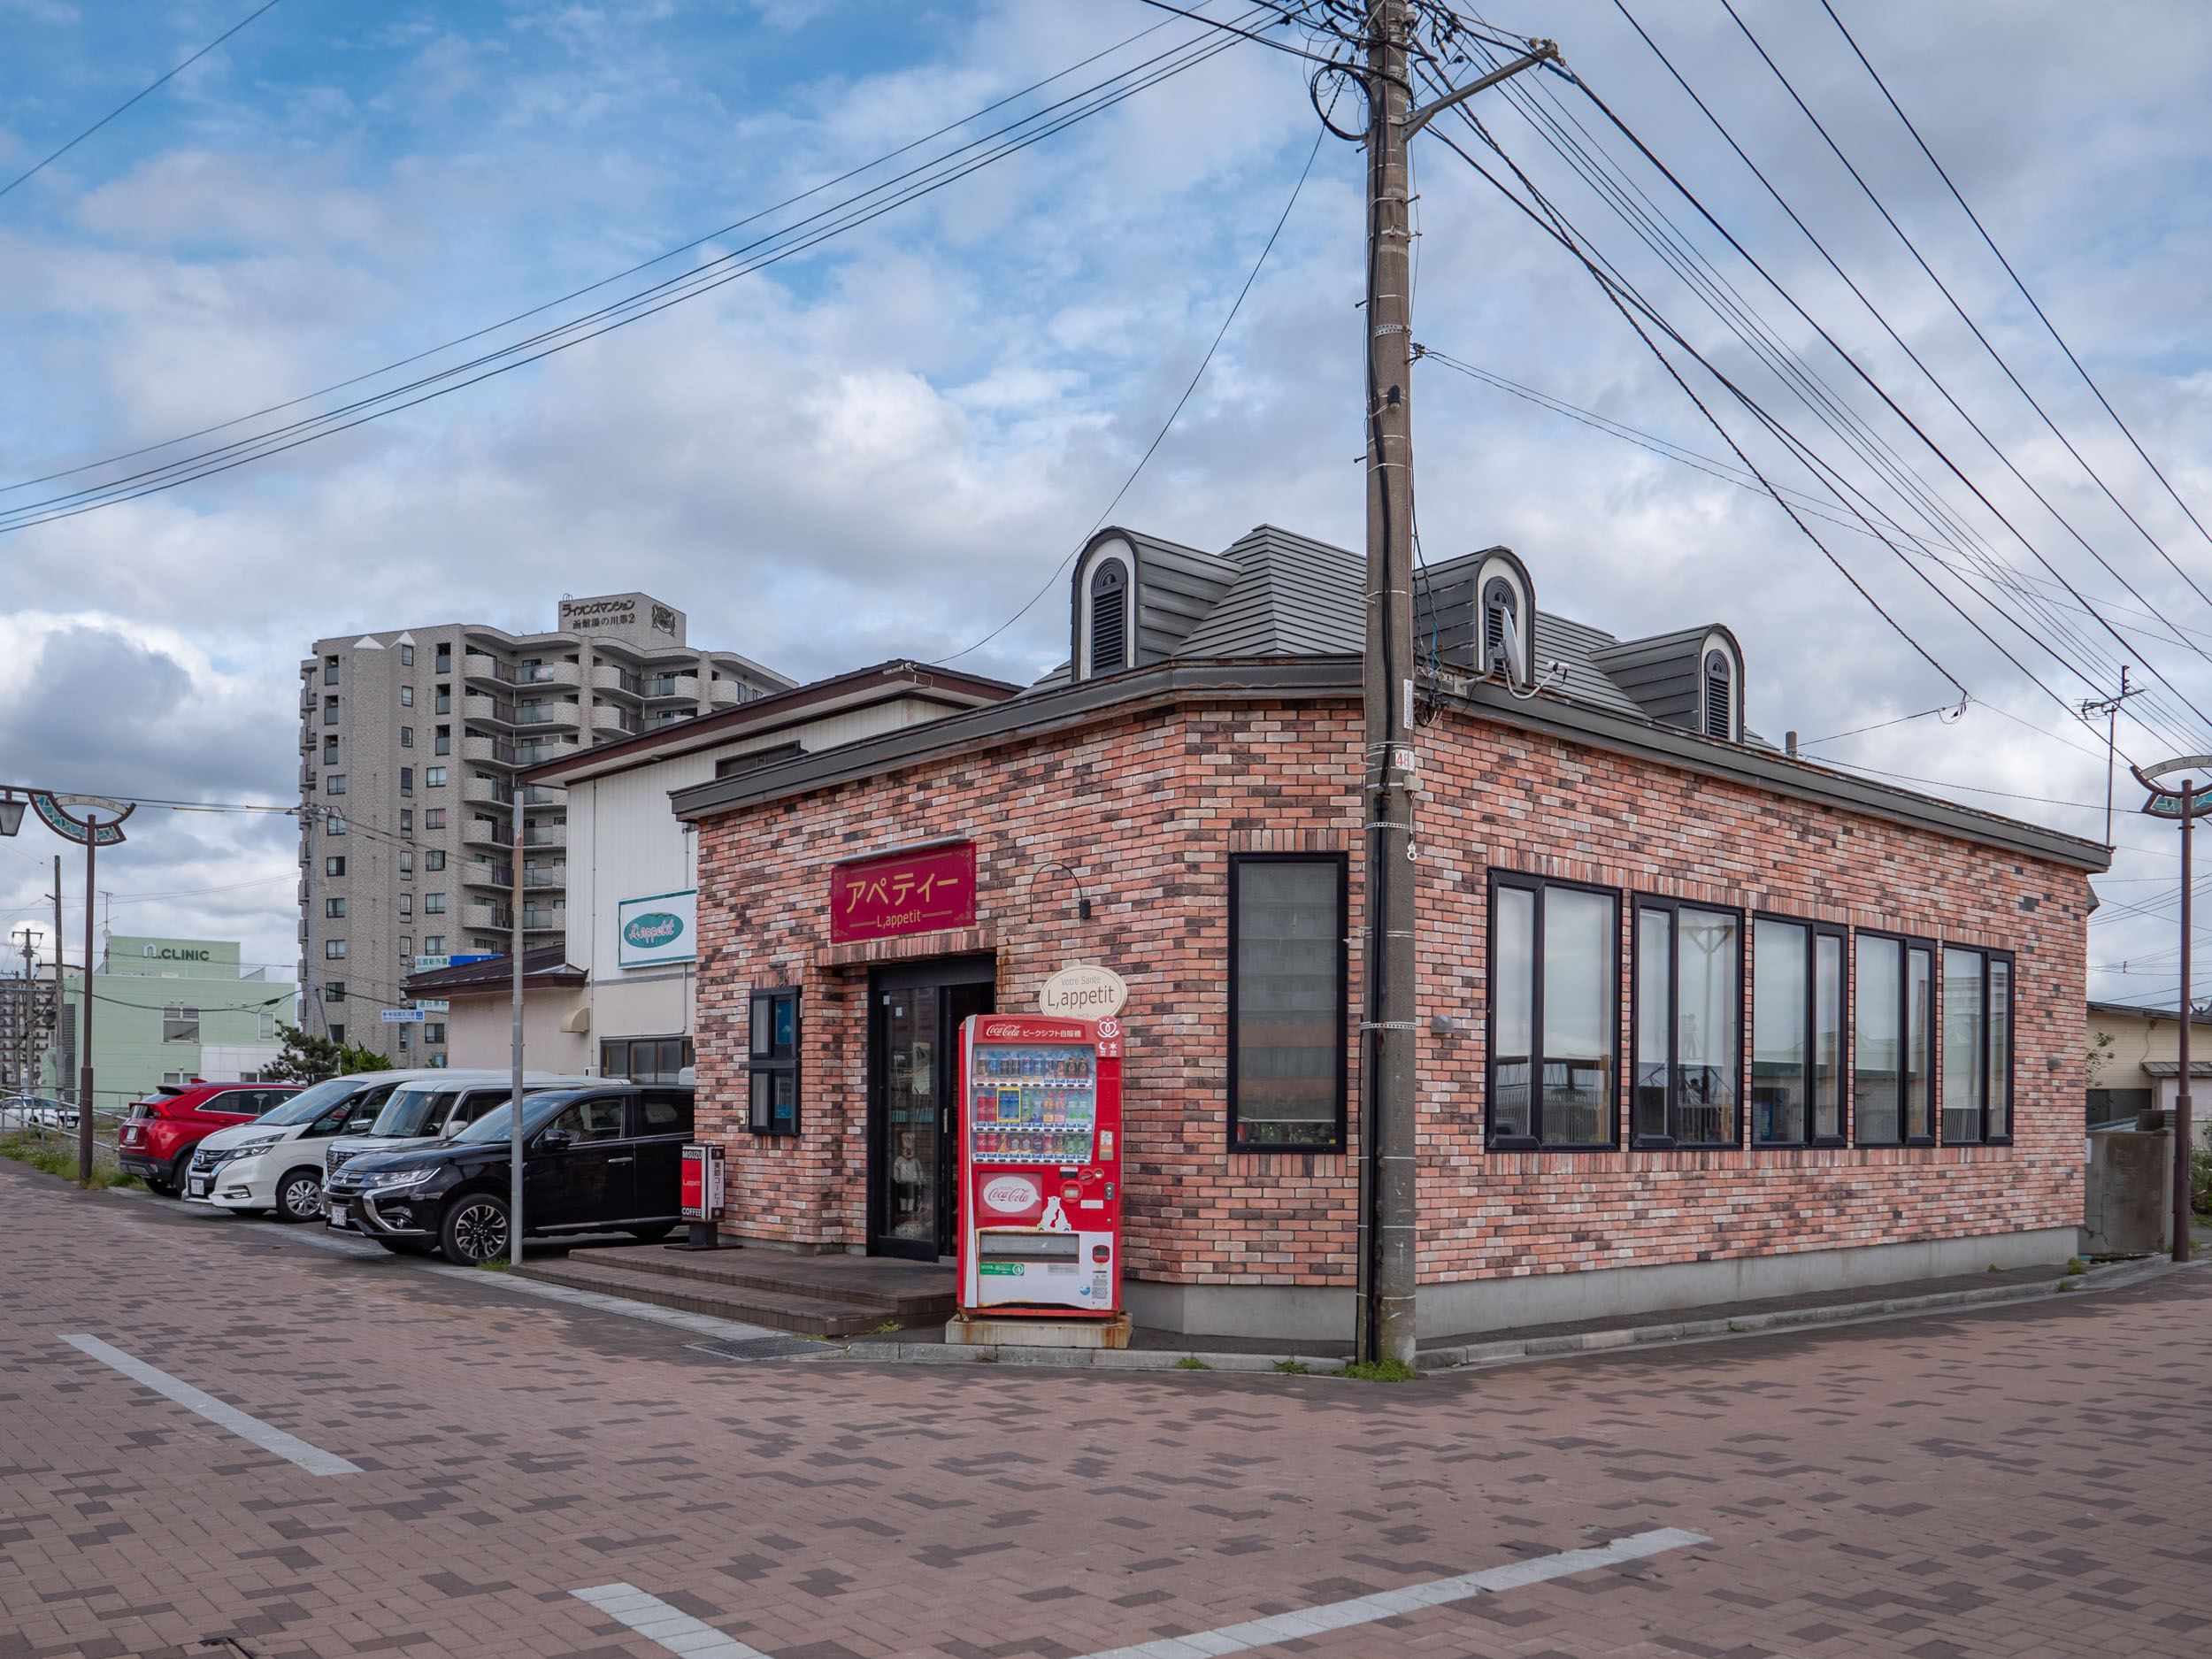 函館市湯の川の洋食店「エル・アペティ」の外観　DMC-GX8 + LEICA DG 12-60mm